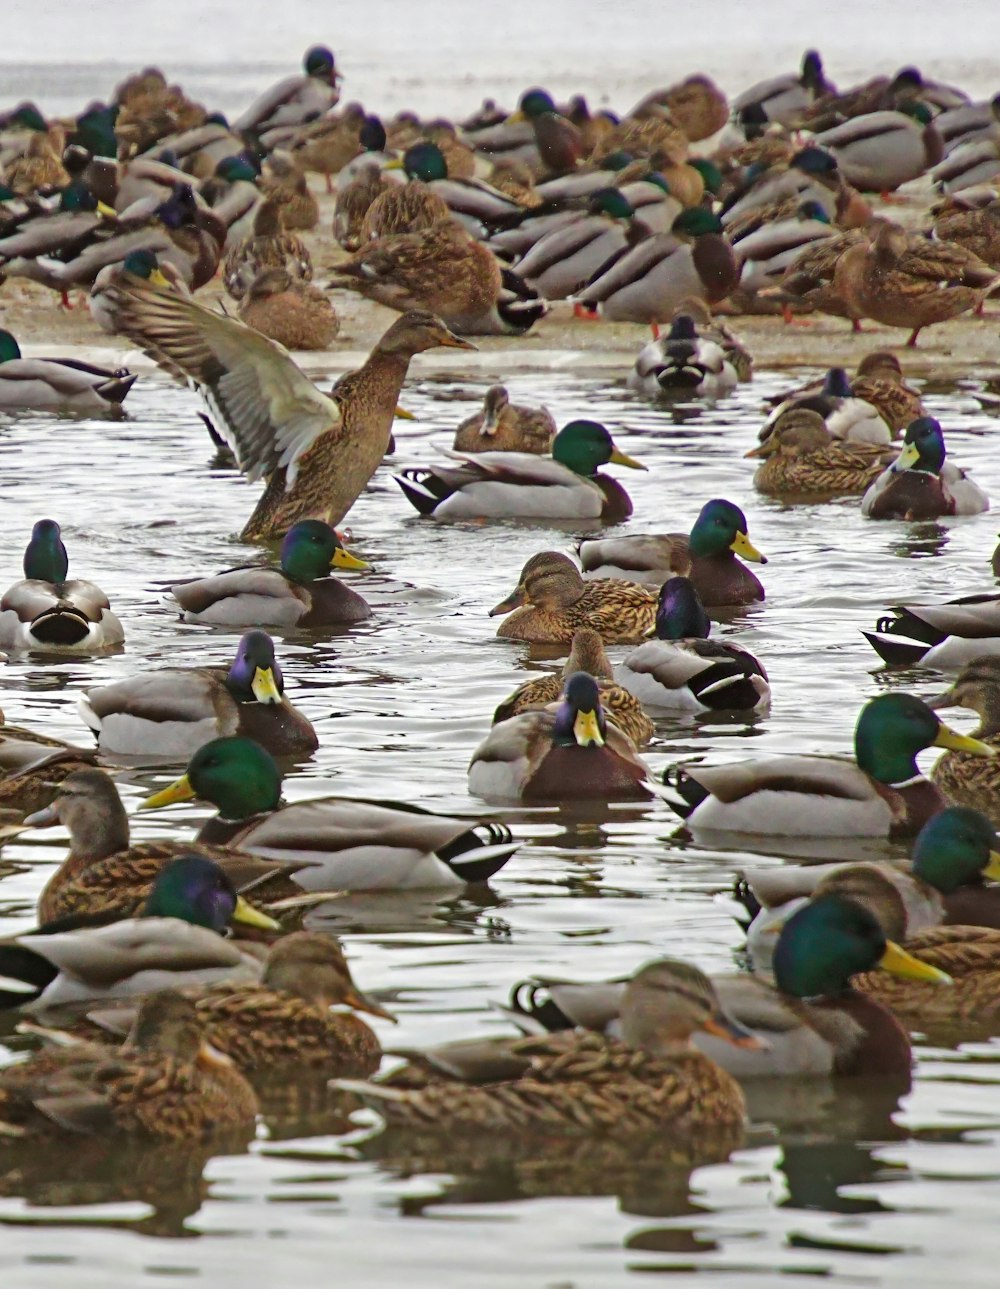 Eine große Gruppe von Enten schwimmt im Wasser